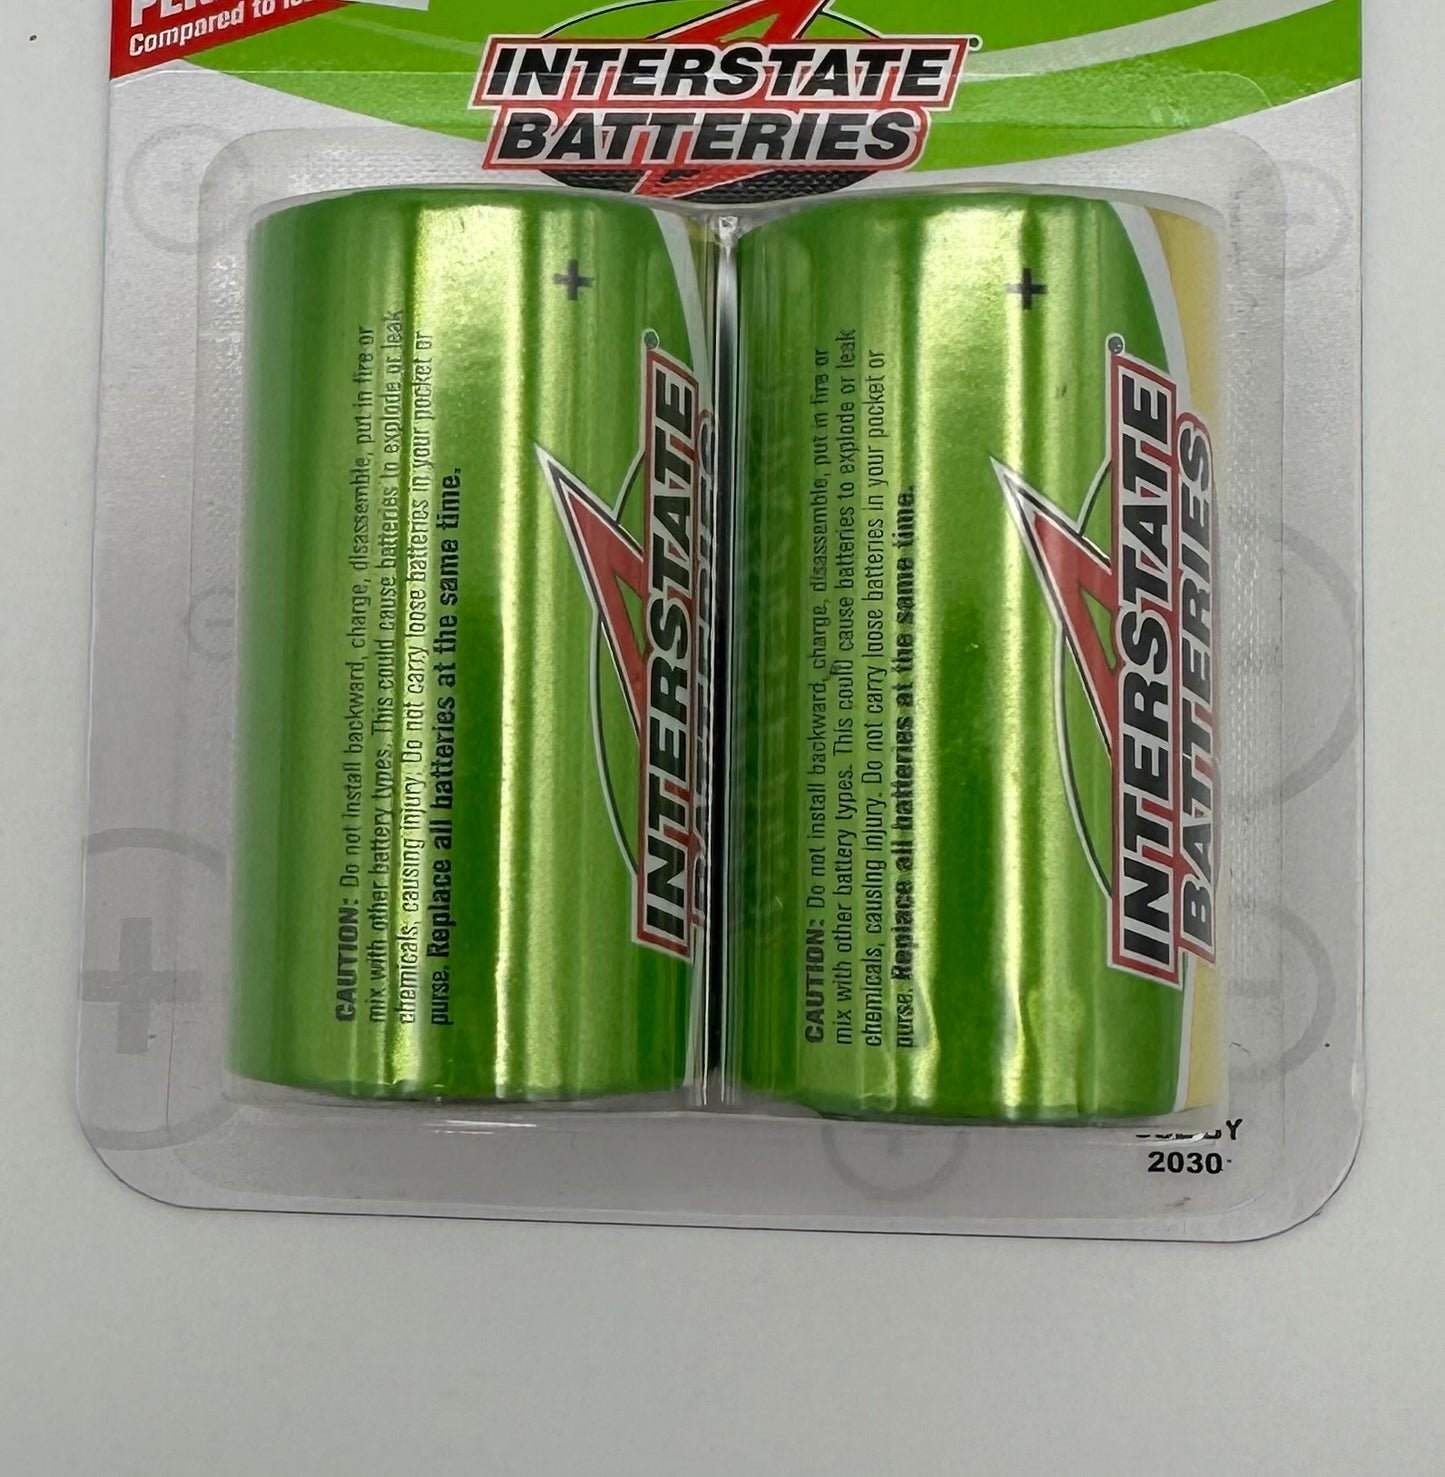 Interstate Batteries - D Batteries Cards